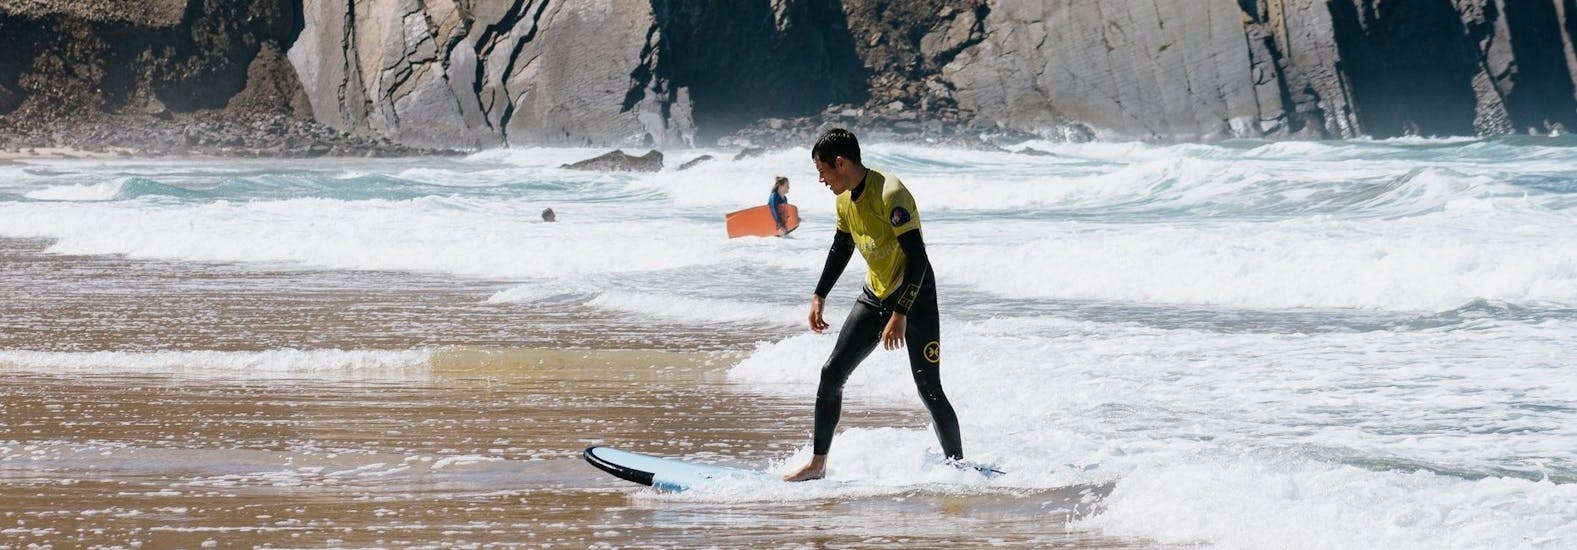 Curso de Surf Privado en Portimão a partir de 8 años para principiantes.